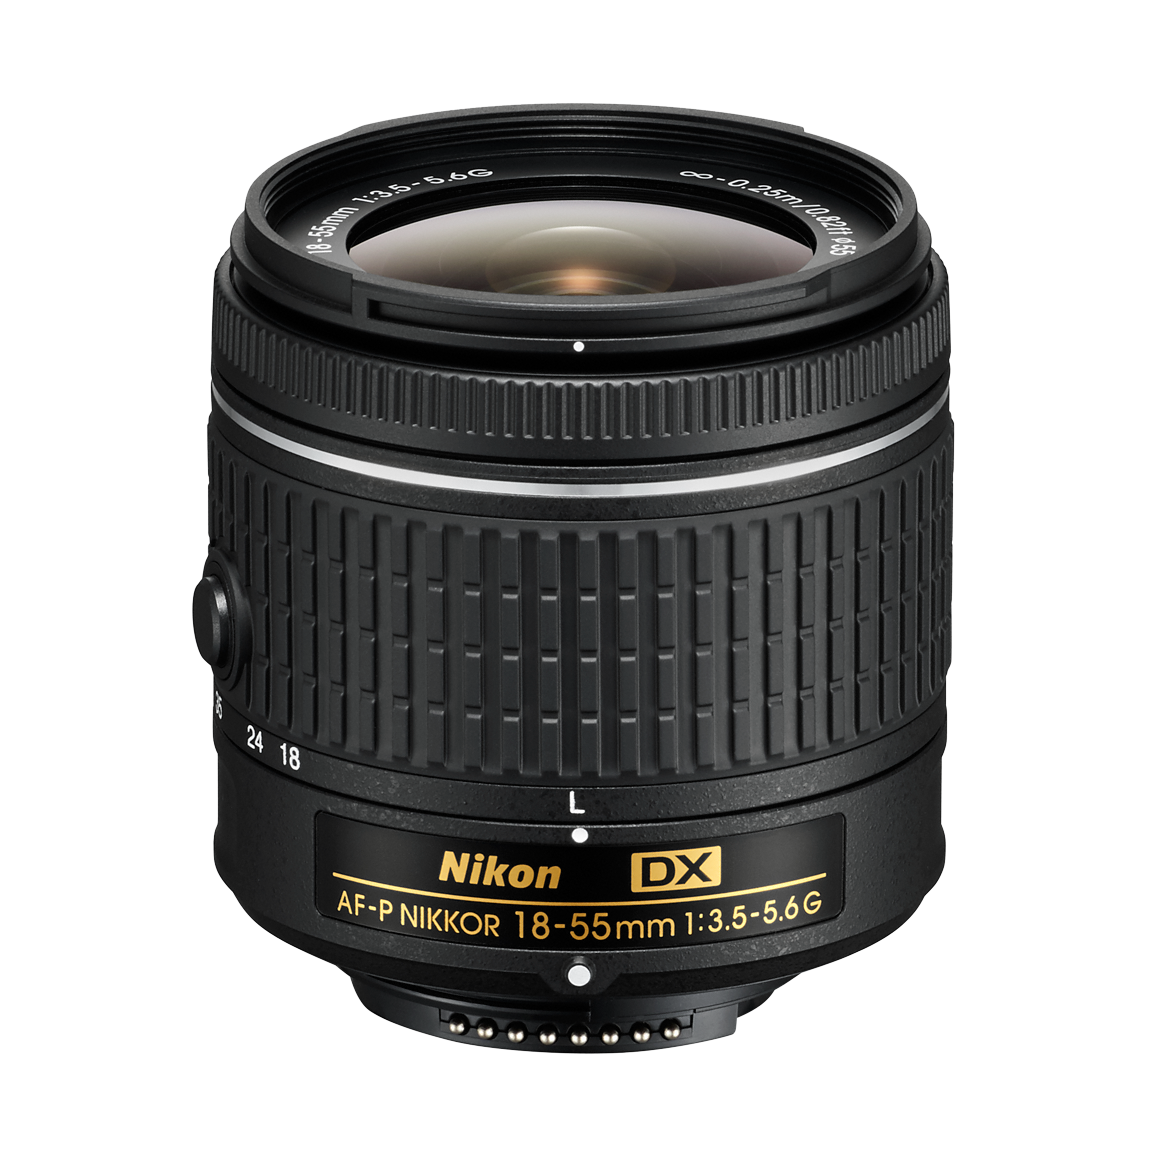 Nikon AF-P DX NIKKOR 18-55mm f/3.5-5.6G Lens | NIKKOR Lenses